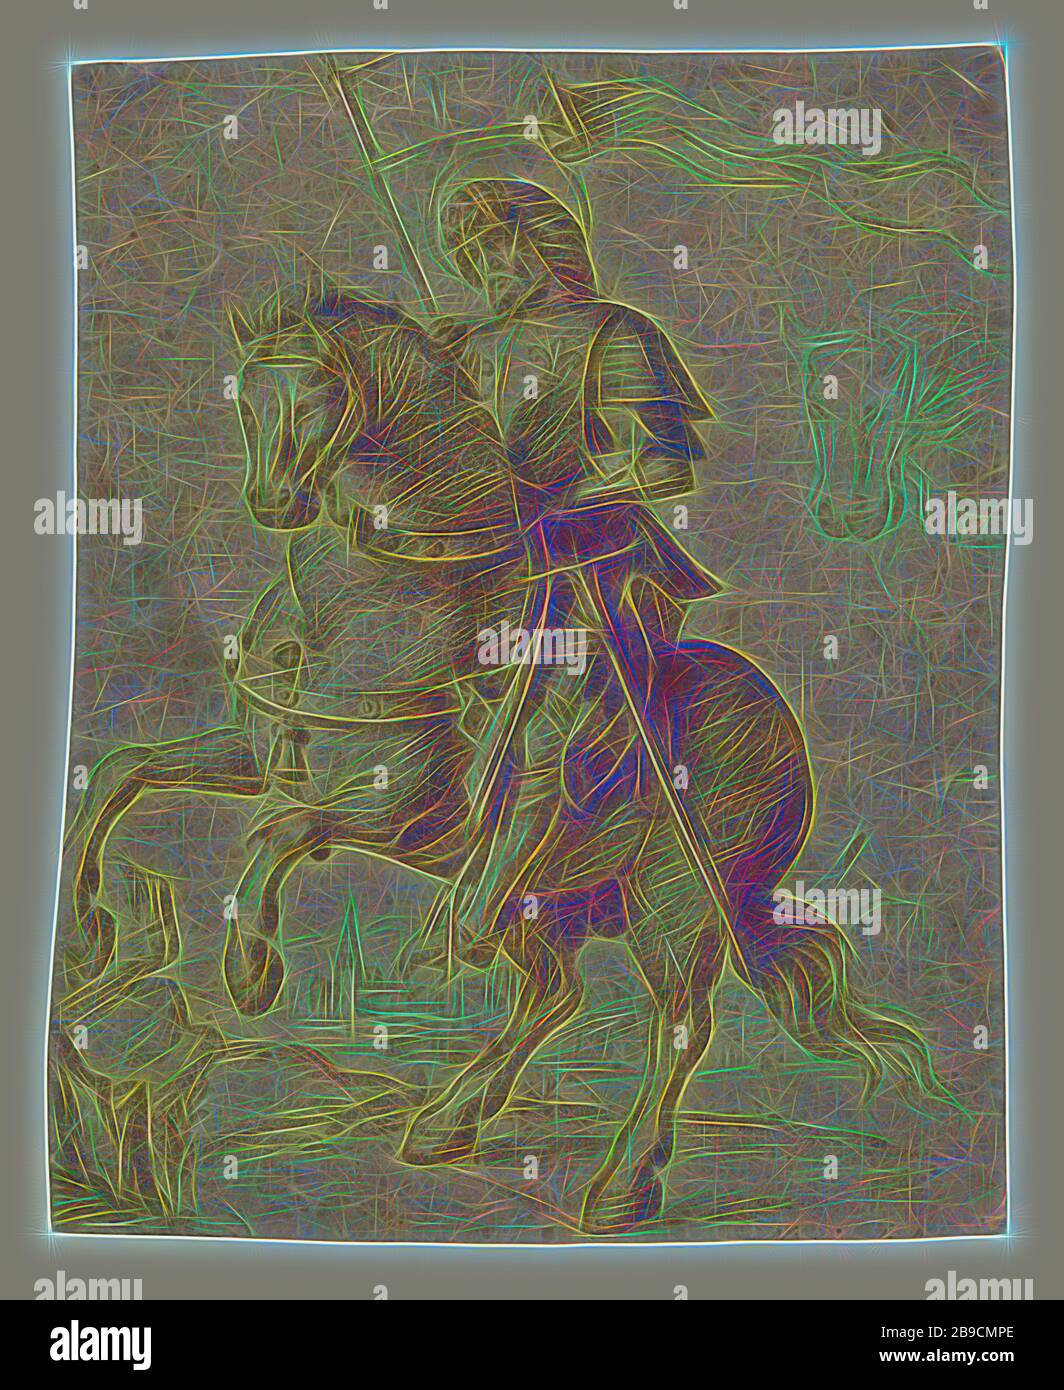 Ein Heiliger auf Horseback, Kreis von Giovanni Battista Cima da Conegliano (italienisch (venetianisch), ca. 1459.1460 ? - 1517.1518), Italien, ca. 1510, Rote Kreide über Einstich-Unterzeichnung, schwarze Kreide, 21,6 x 17,6 cm (8 1,2 x 6 15,16 Zoll, von Gibon neu erdacht, Design von warmfröhlichem Leuchten von Helligkeit und Lichtstrahlen. Klassische Kunst mit moderner Note neu erfunden. Fotografie, inspiriert vom Futurismus, die dynamische Energie moderner Technologie, Bewegung, Geschwindigkeit und Kultur revolutionieren. Stockfoto